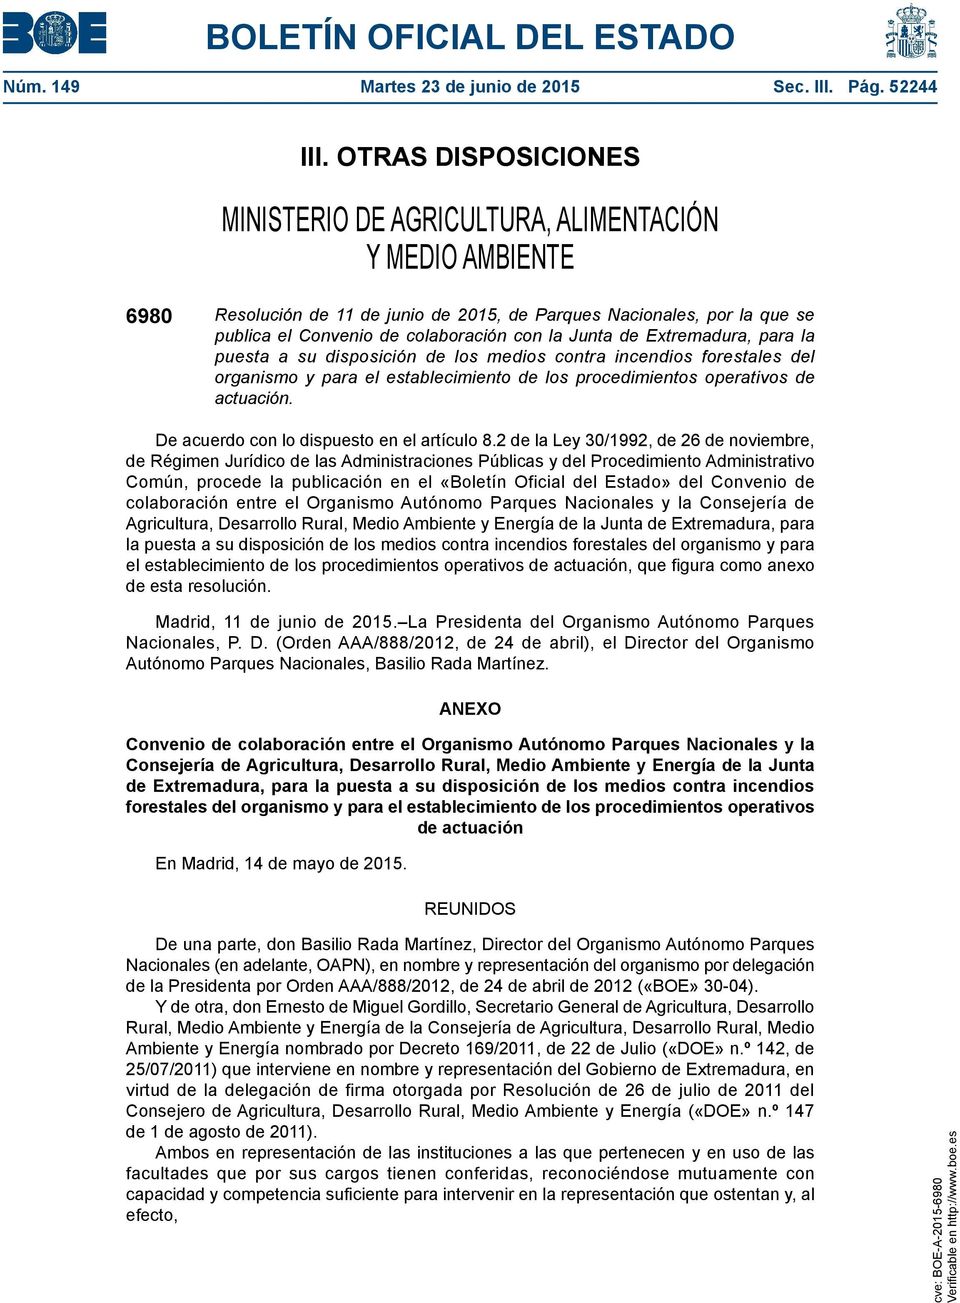 Junta de Extremadura, para la puesta a su disposición de los medios contra incendios forestales del organismo y para el establecimiento de los procedimientos operativos de actuación.